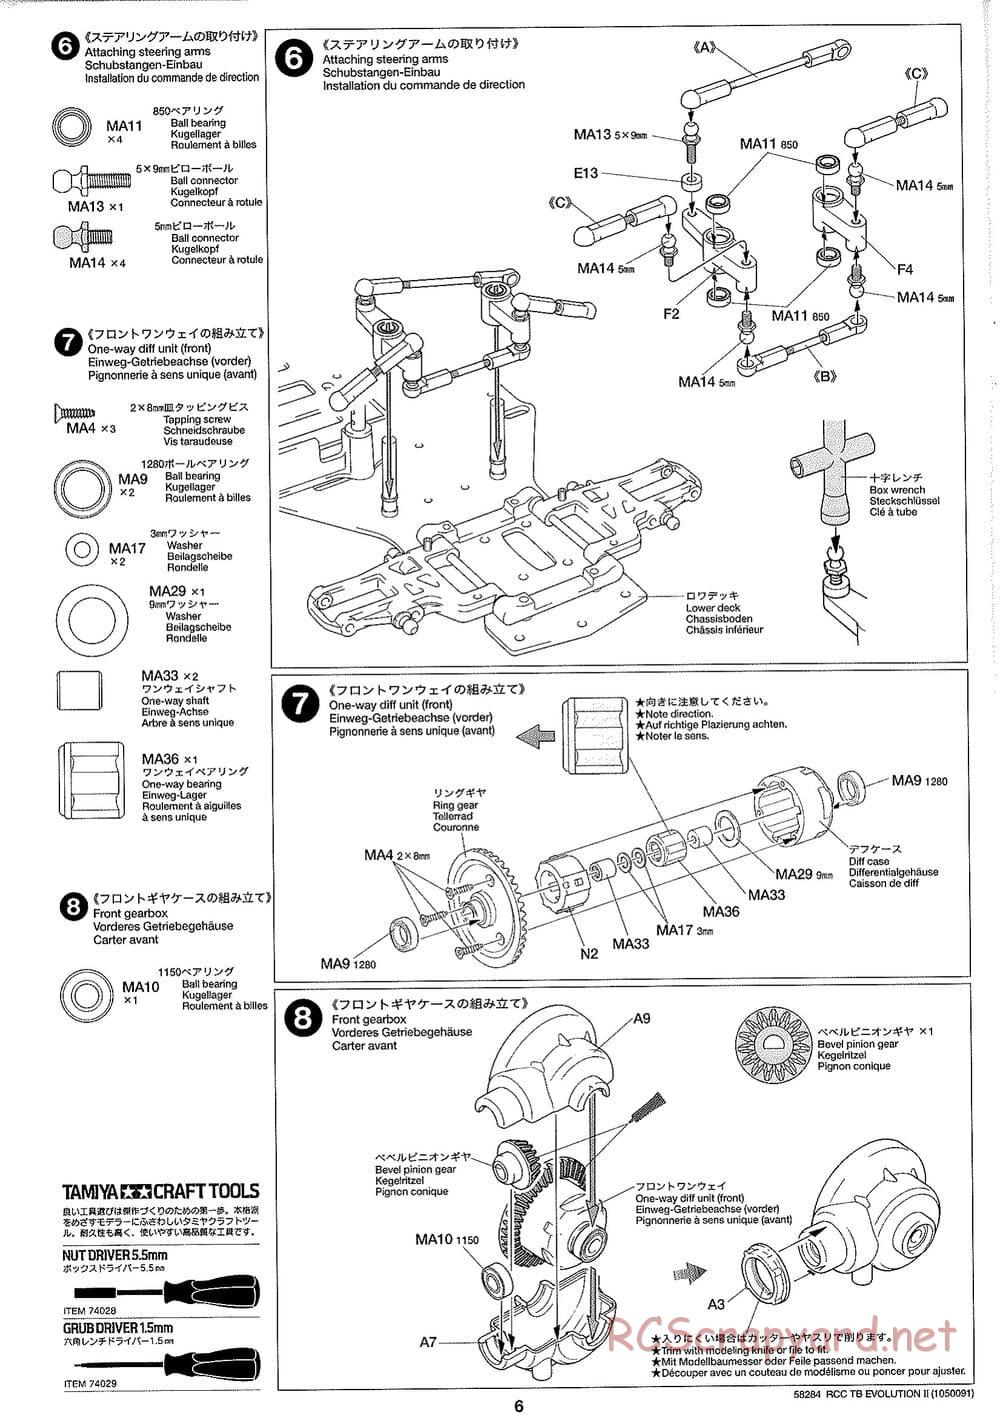 Tamiya - TB Evolution II Chassis - Manual - Page 6